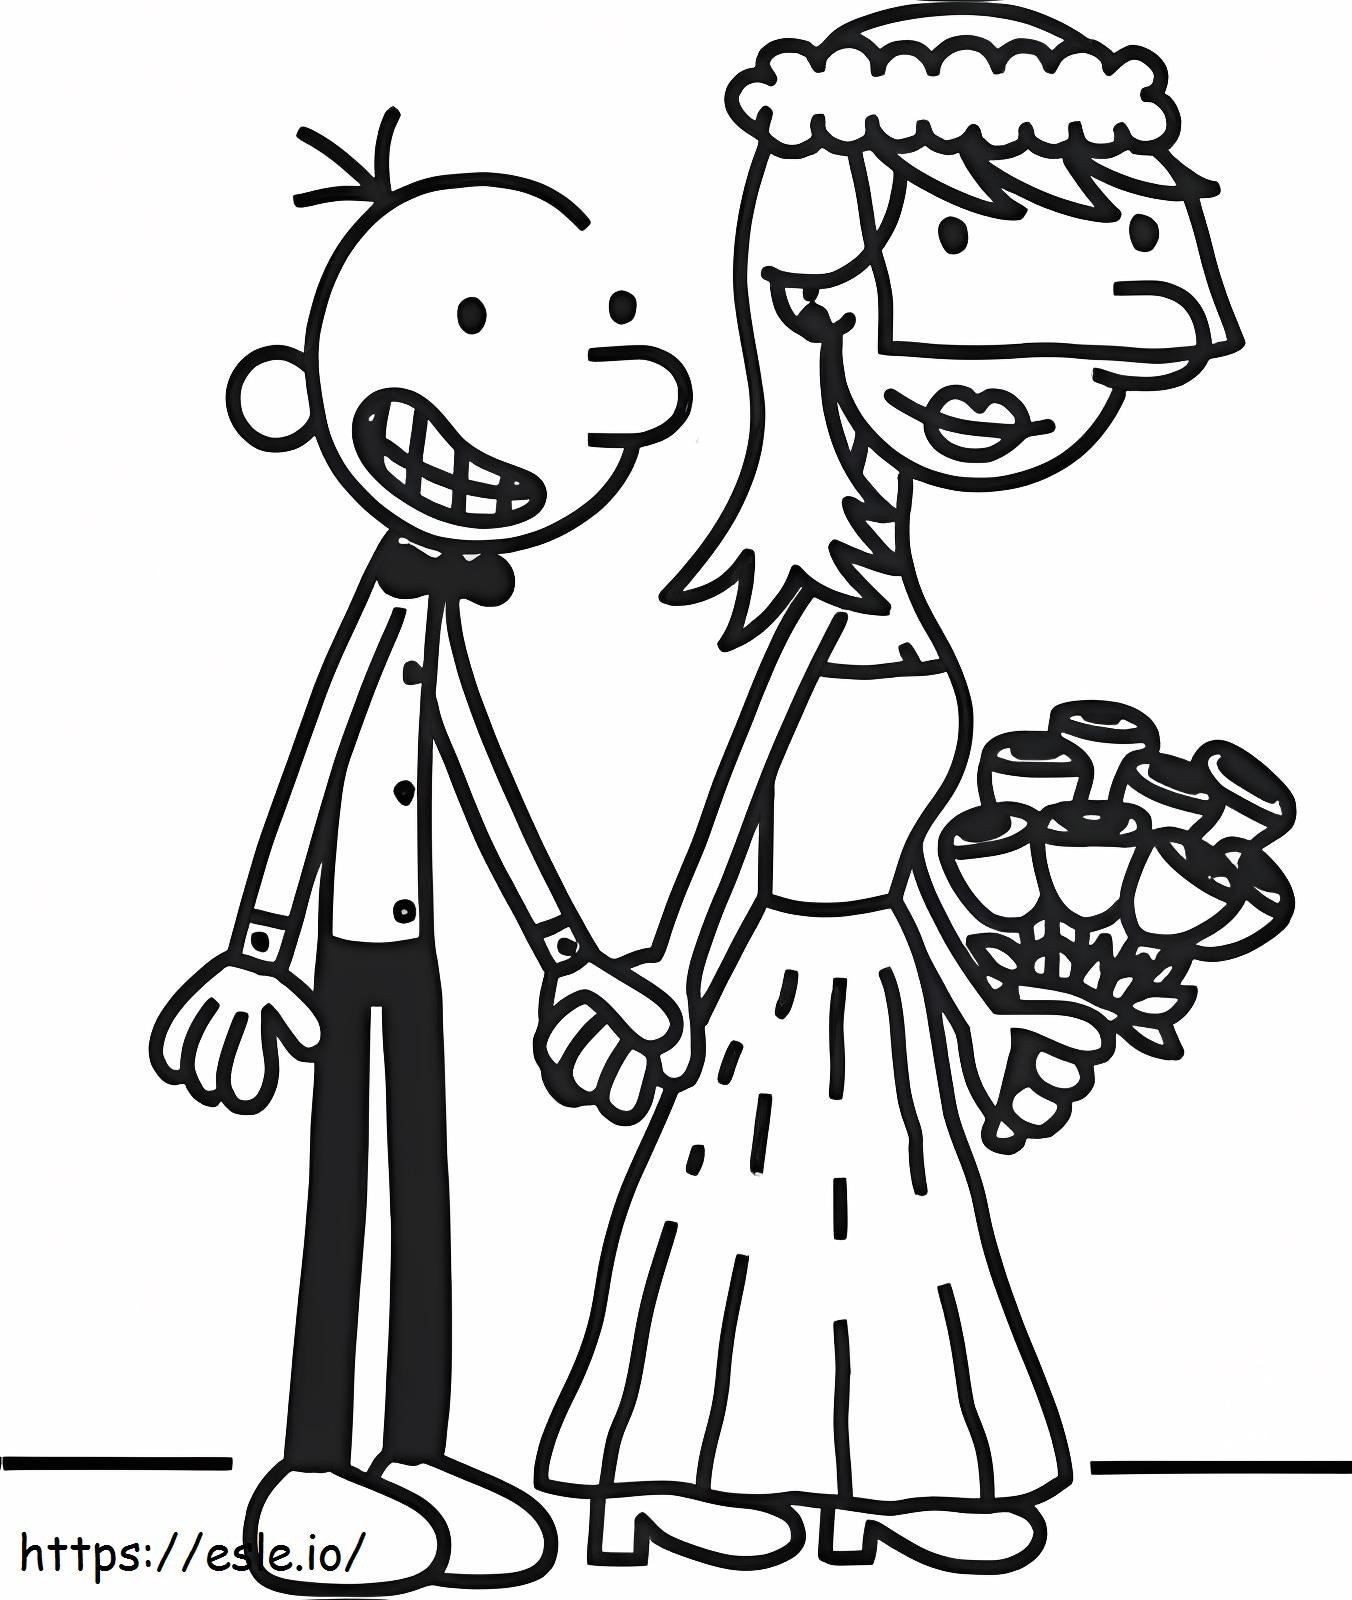 Il matrimonio di Wimpy Kid da colorare